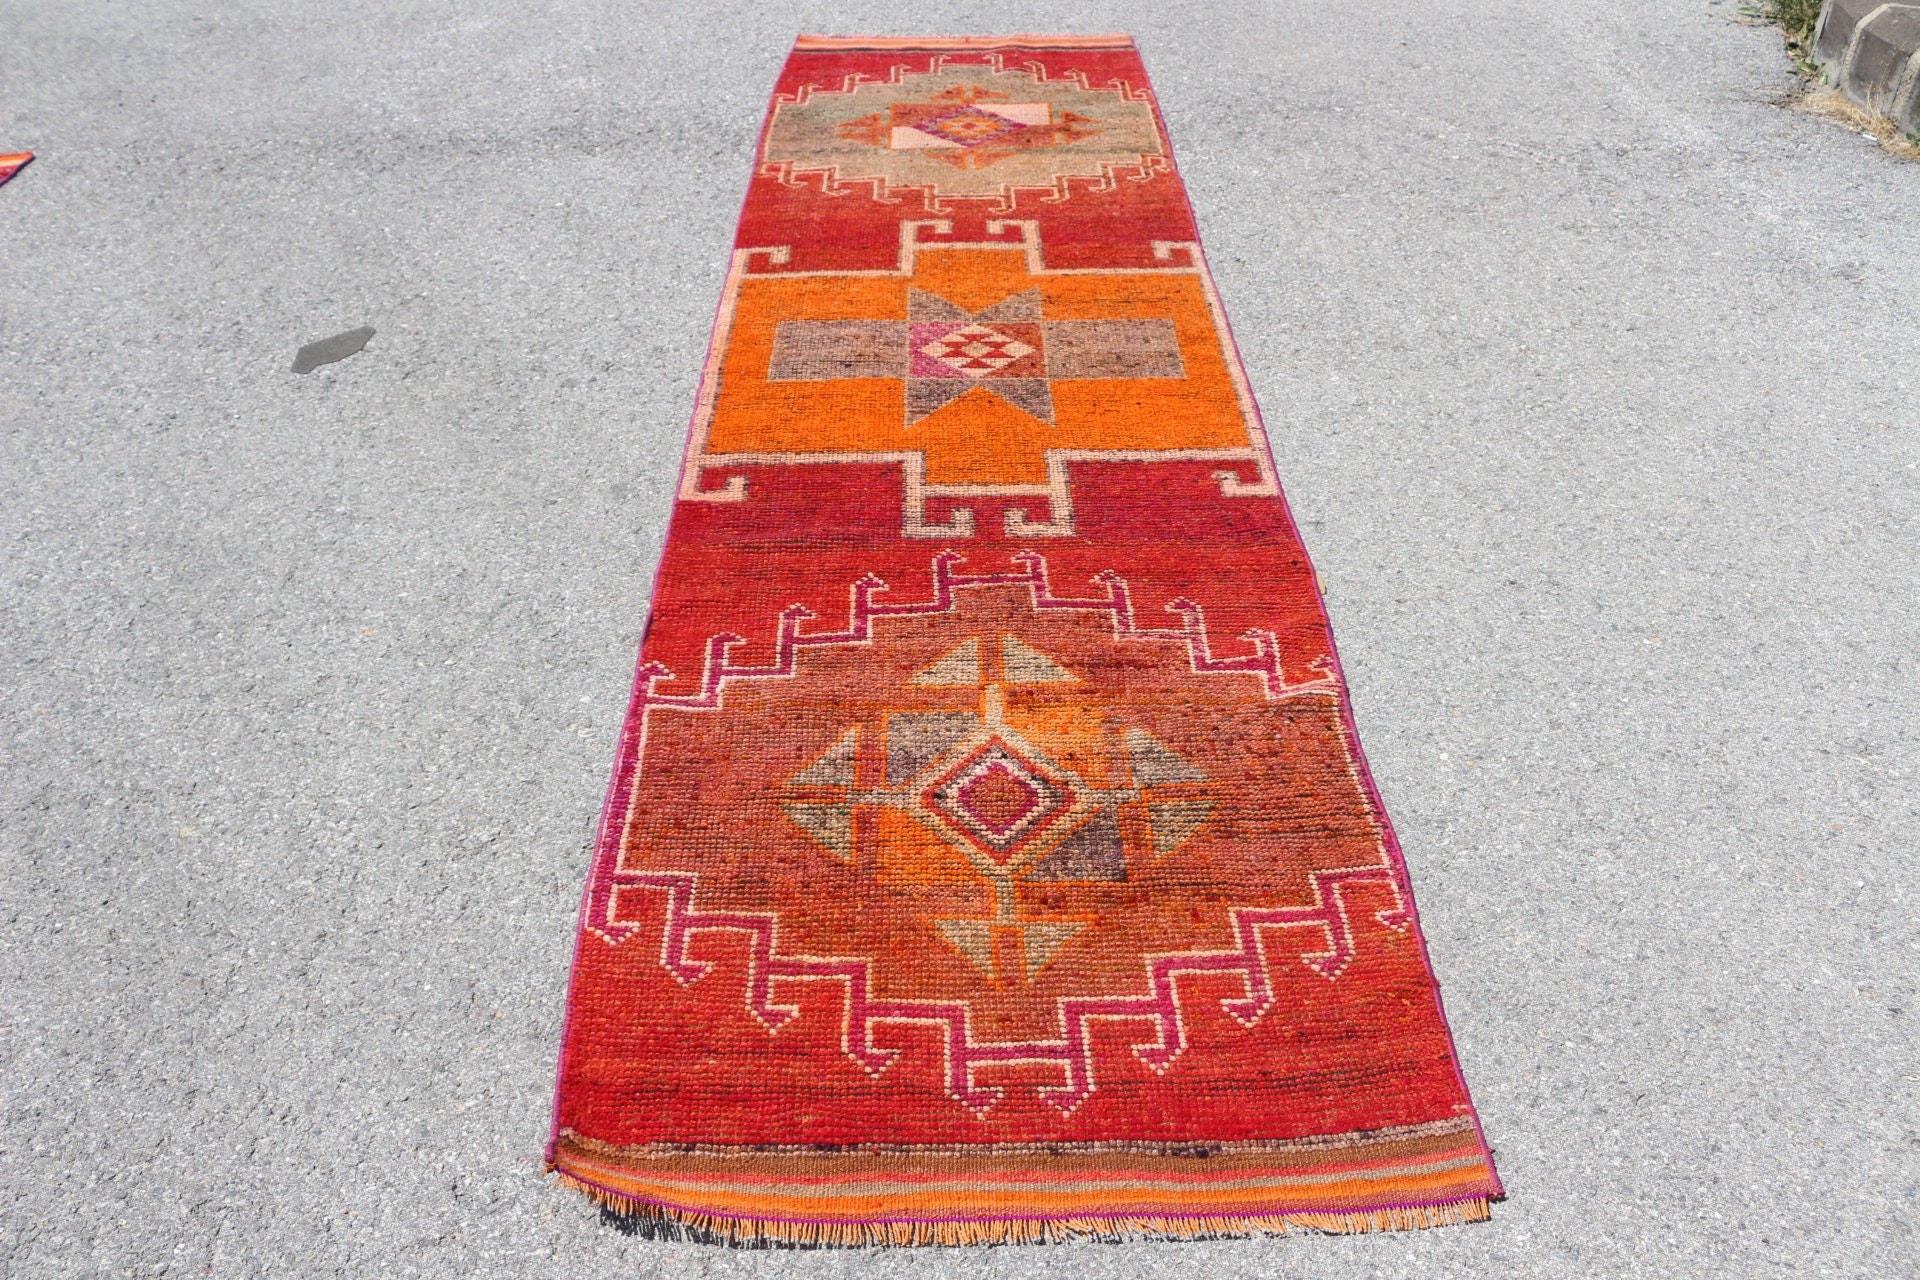 Red Moroccan Rug, 3x11.1 ft Runner Rug, Vintage Rug, Rugs for Runner, Corridor Rug, Turkish Rug, Wool Rugs, Office Rugs